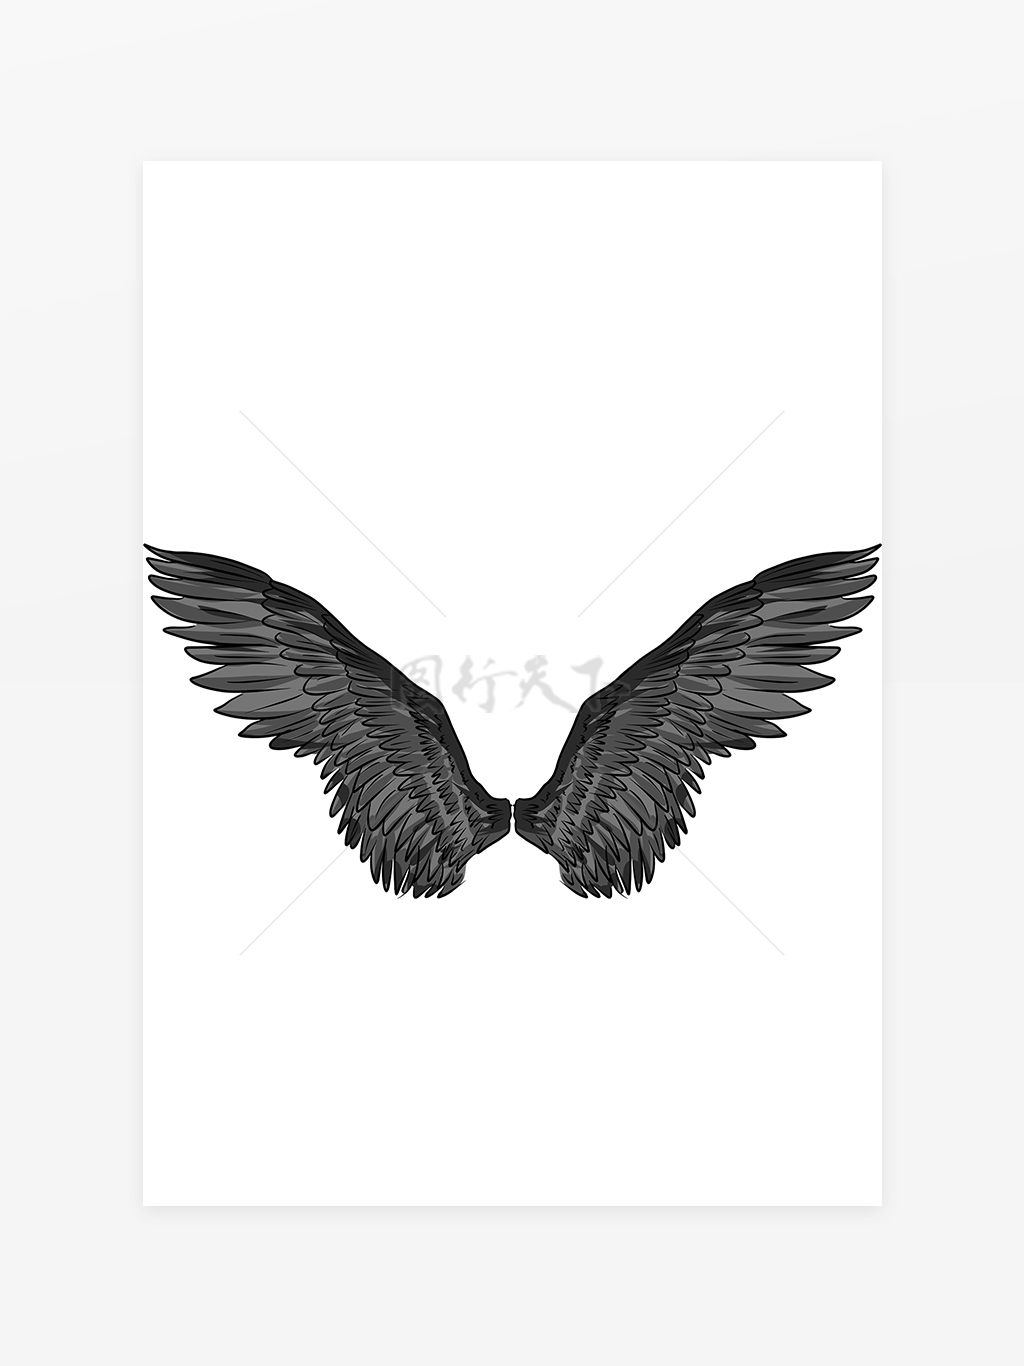 黑色翅膀素材图片